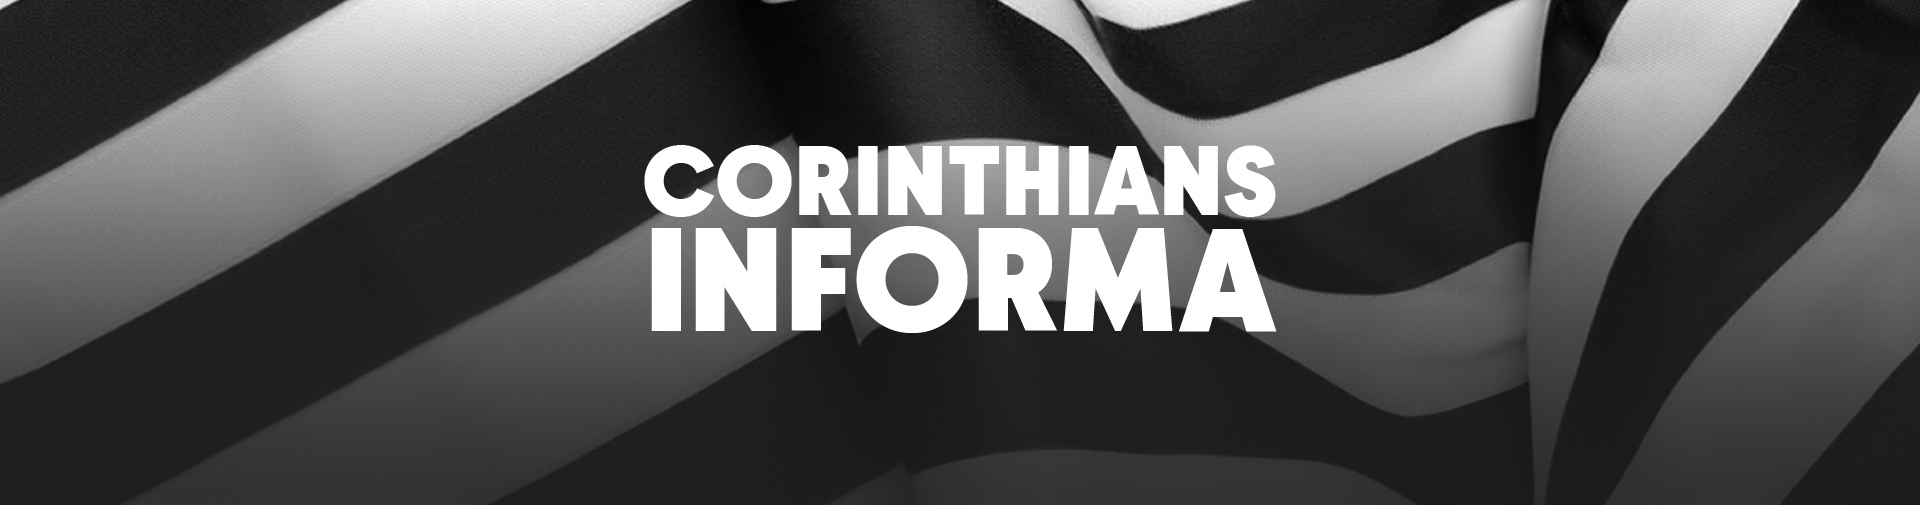 Corinthians Informa – Ingressos para Não Pagantes e PCDs